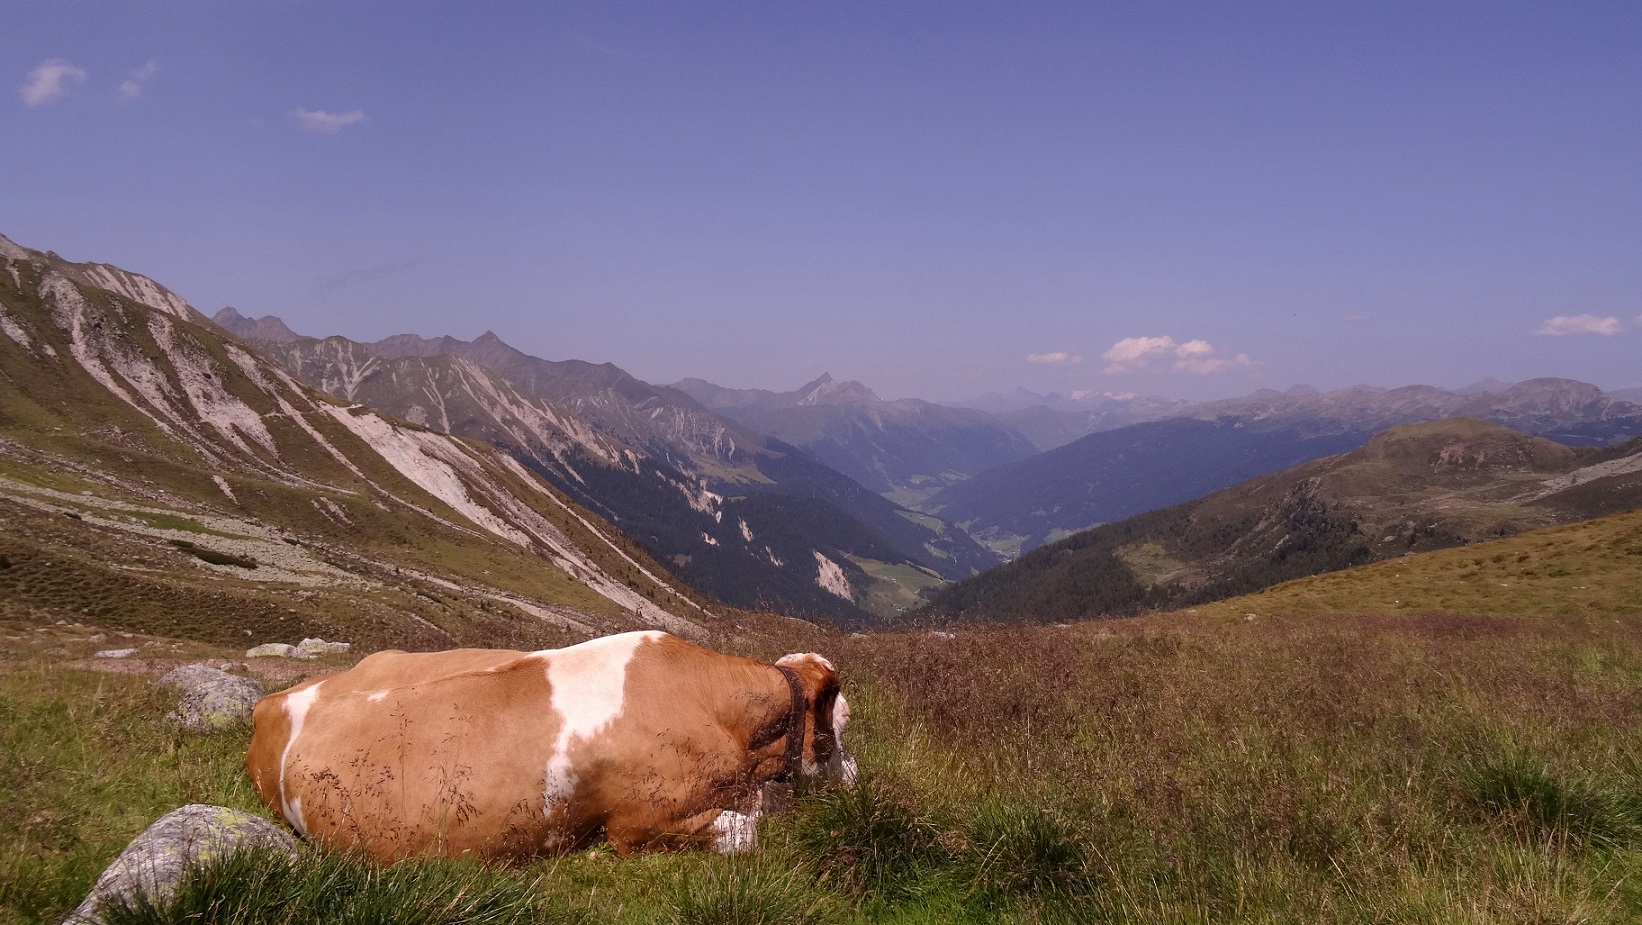 Une vache et les montagnes des Alpes italiennes